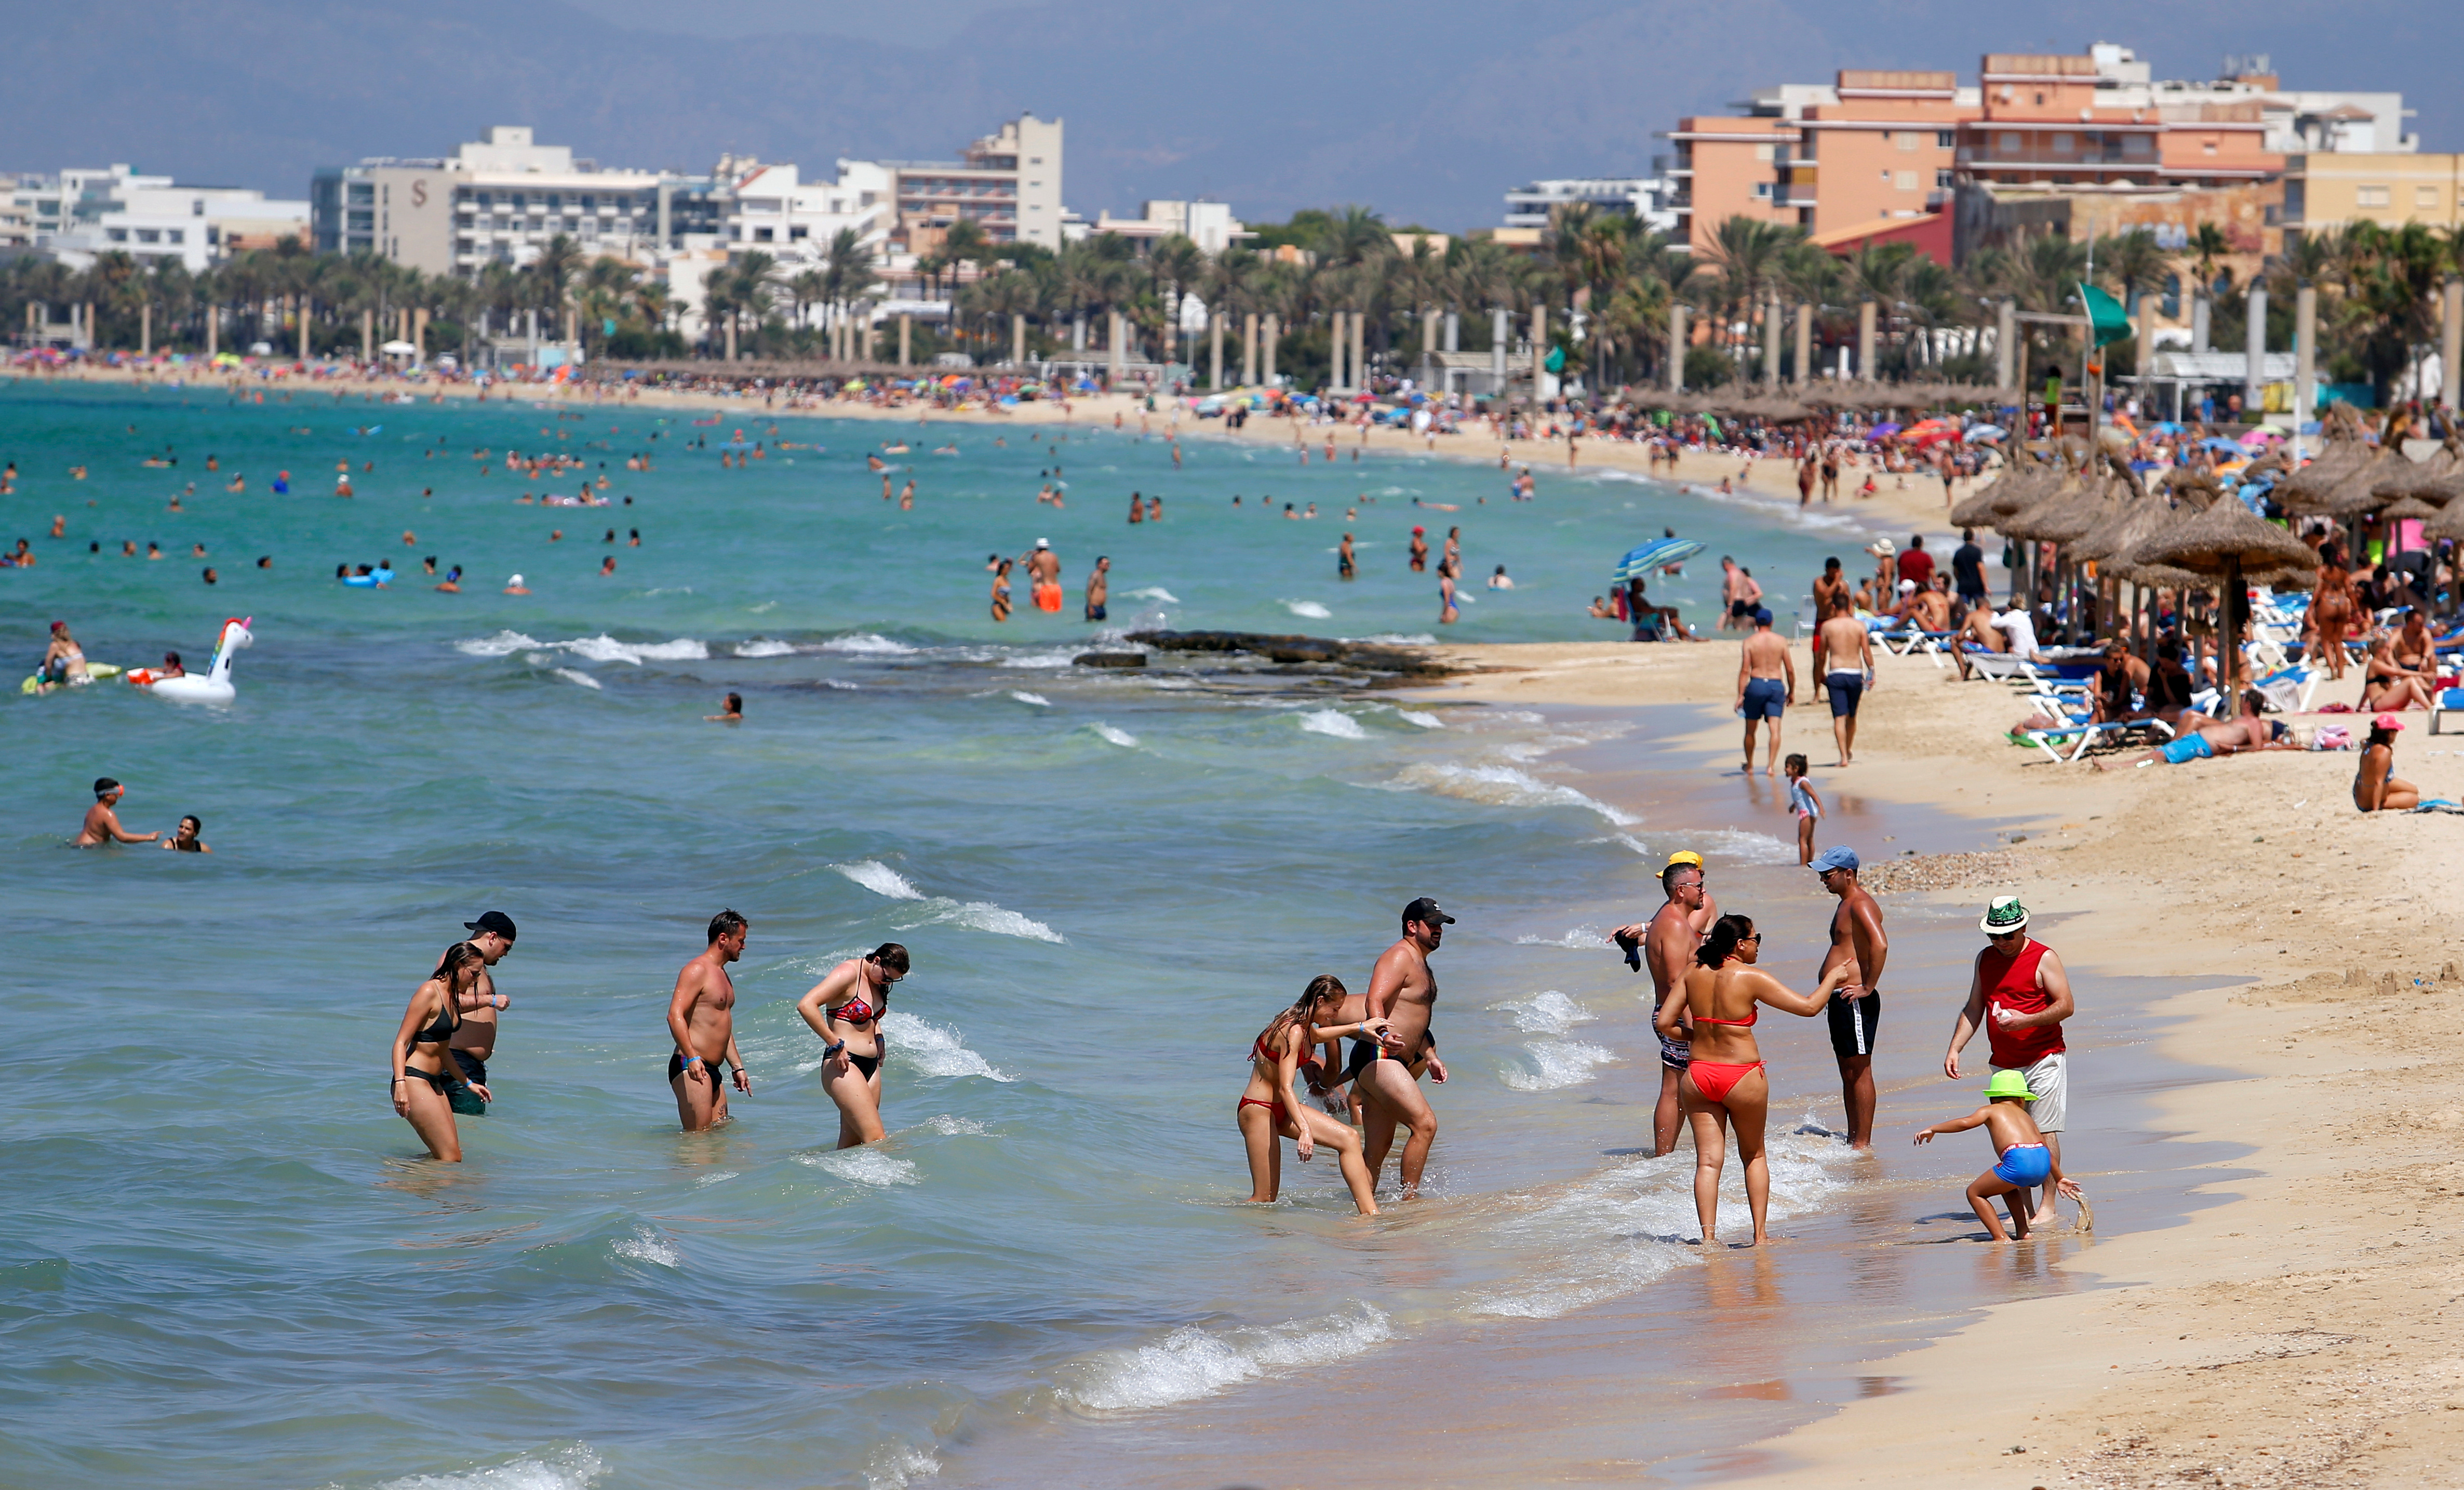 Veraneantes en la playa de El Arenal en Palma de Mallorca, uno de los primeros lugares que se reabrió para el turismo en España (REUTERS/Enrique Calvo)